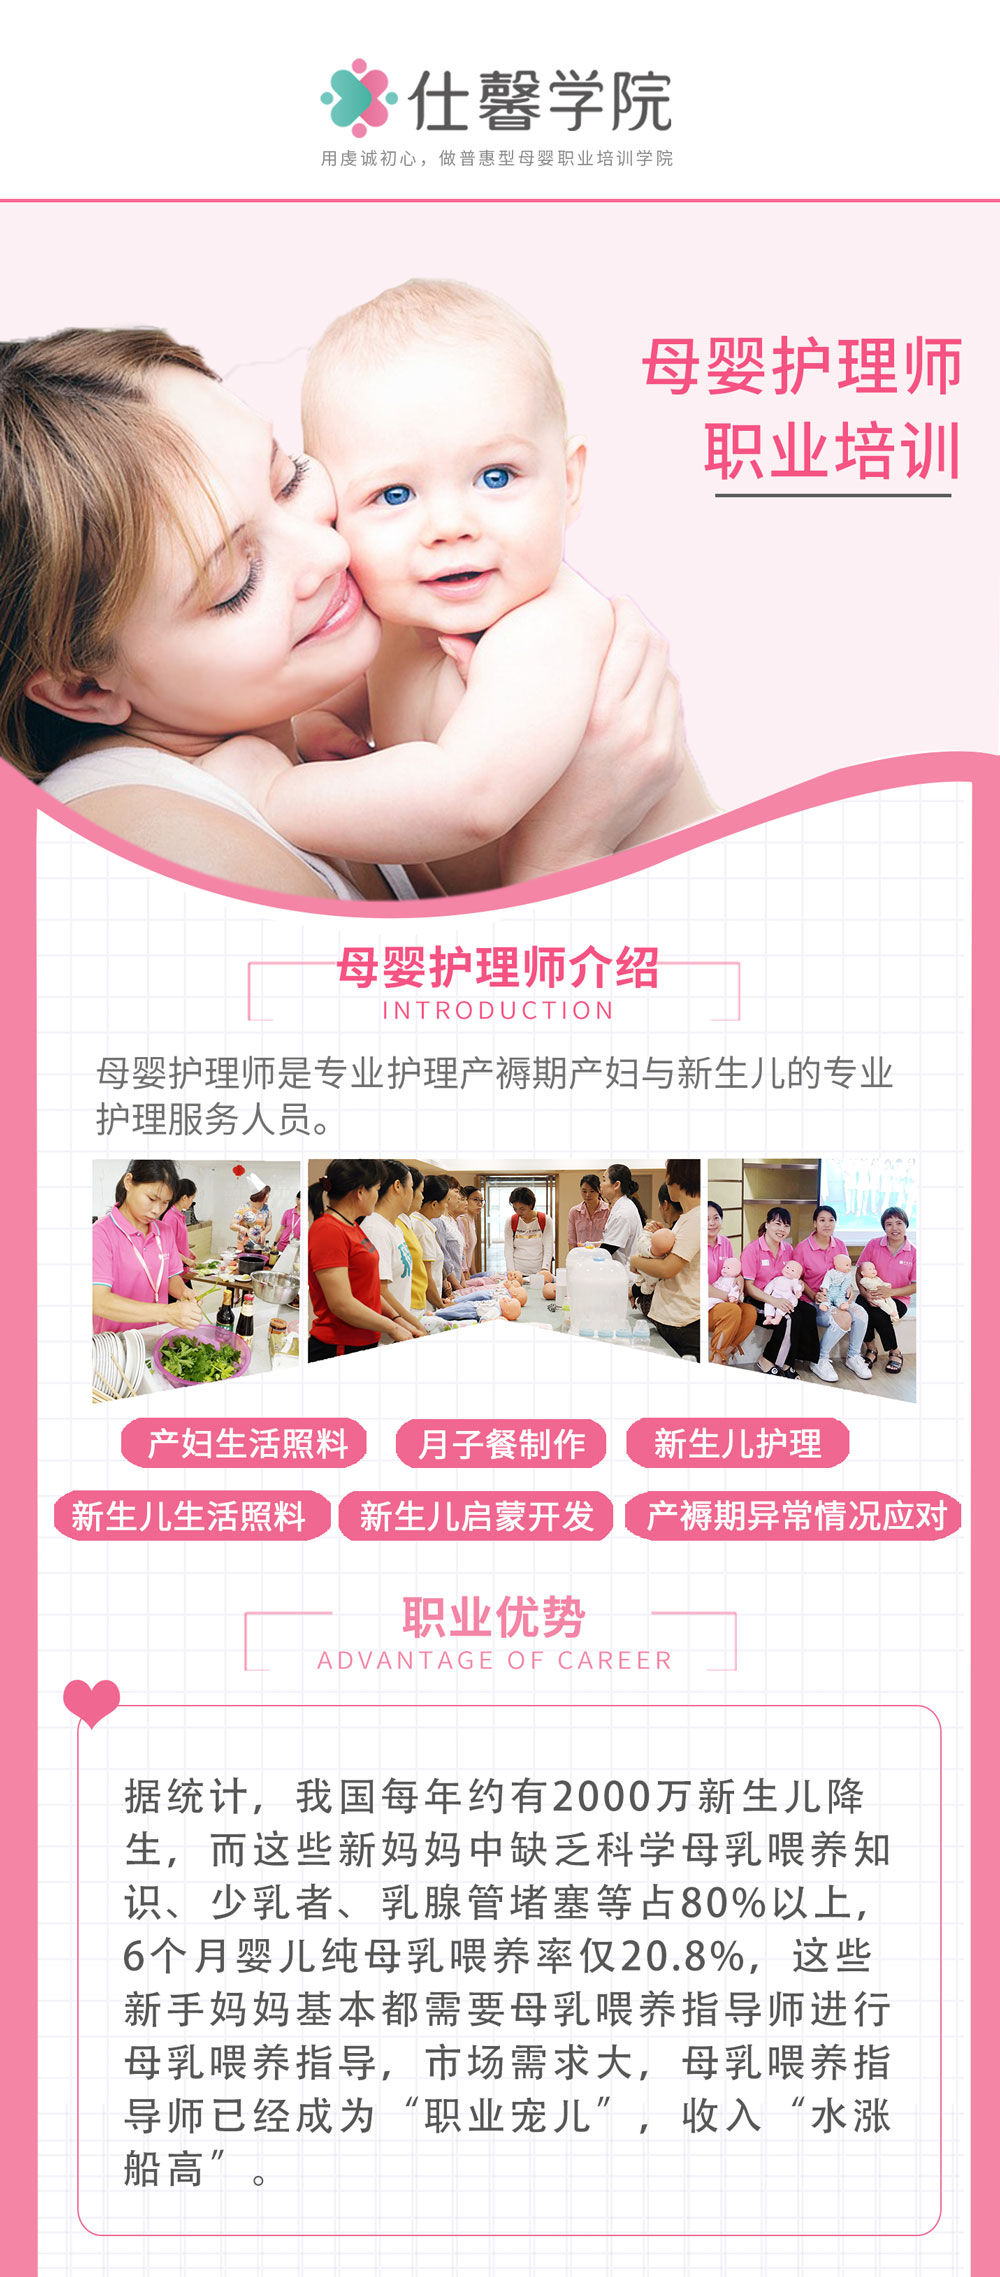 母婴护理课程介绍图片.jpg